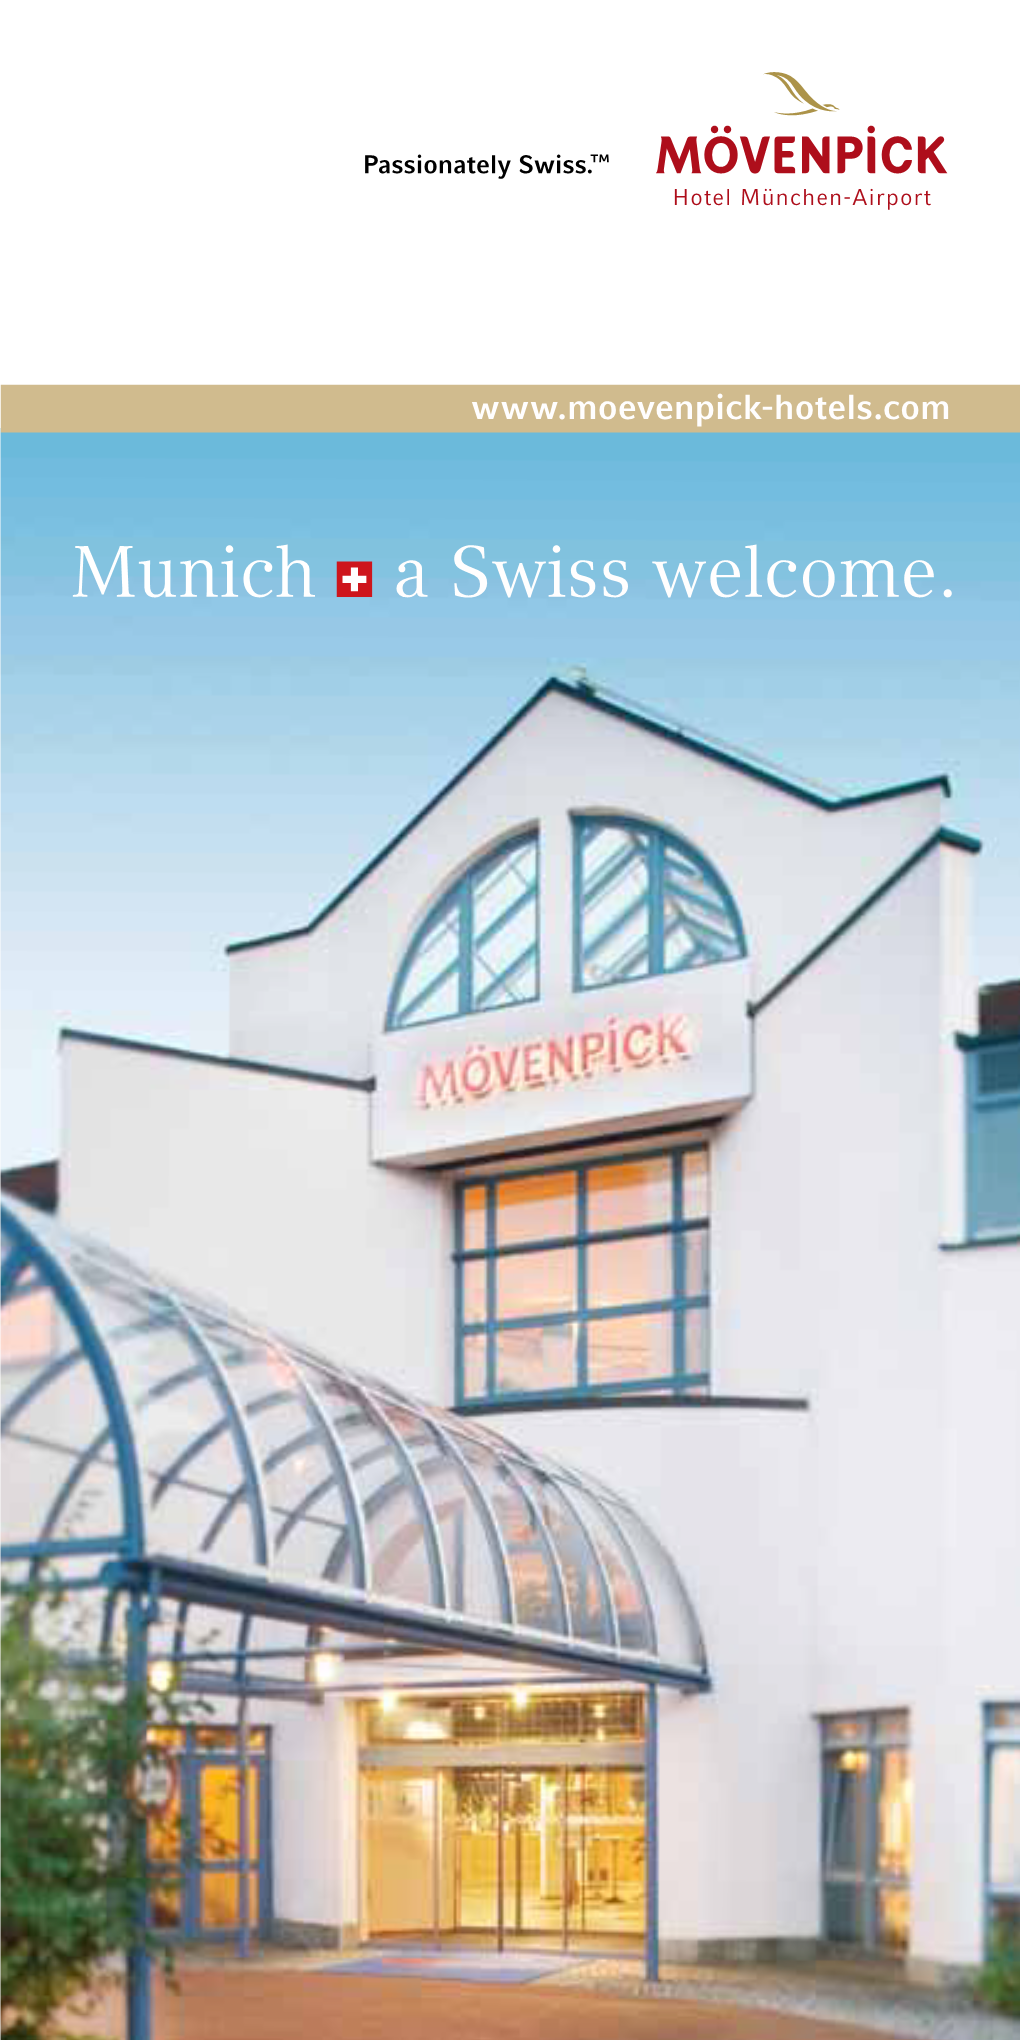 Munich a Swiss Welcome. Service Passionately Swiss